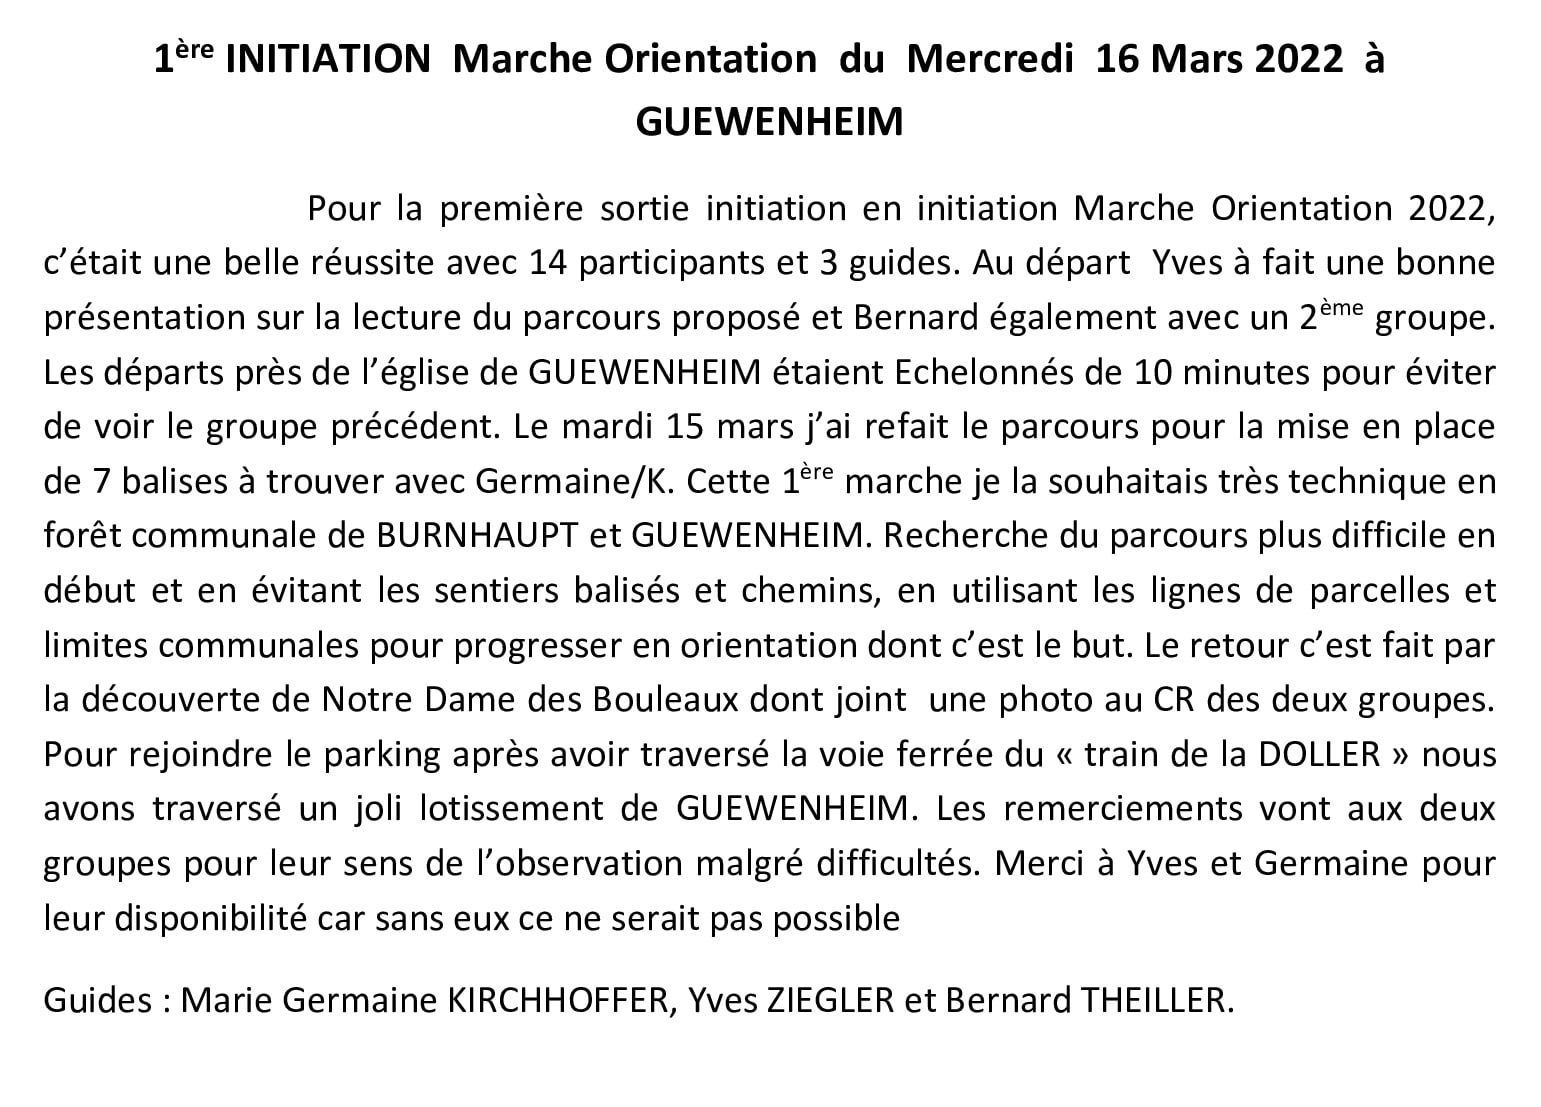 CR-1ere-Initiation-MO-a-Guewenheim-de-16-Mars-2022